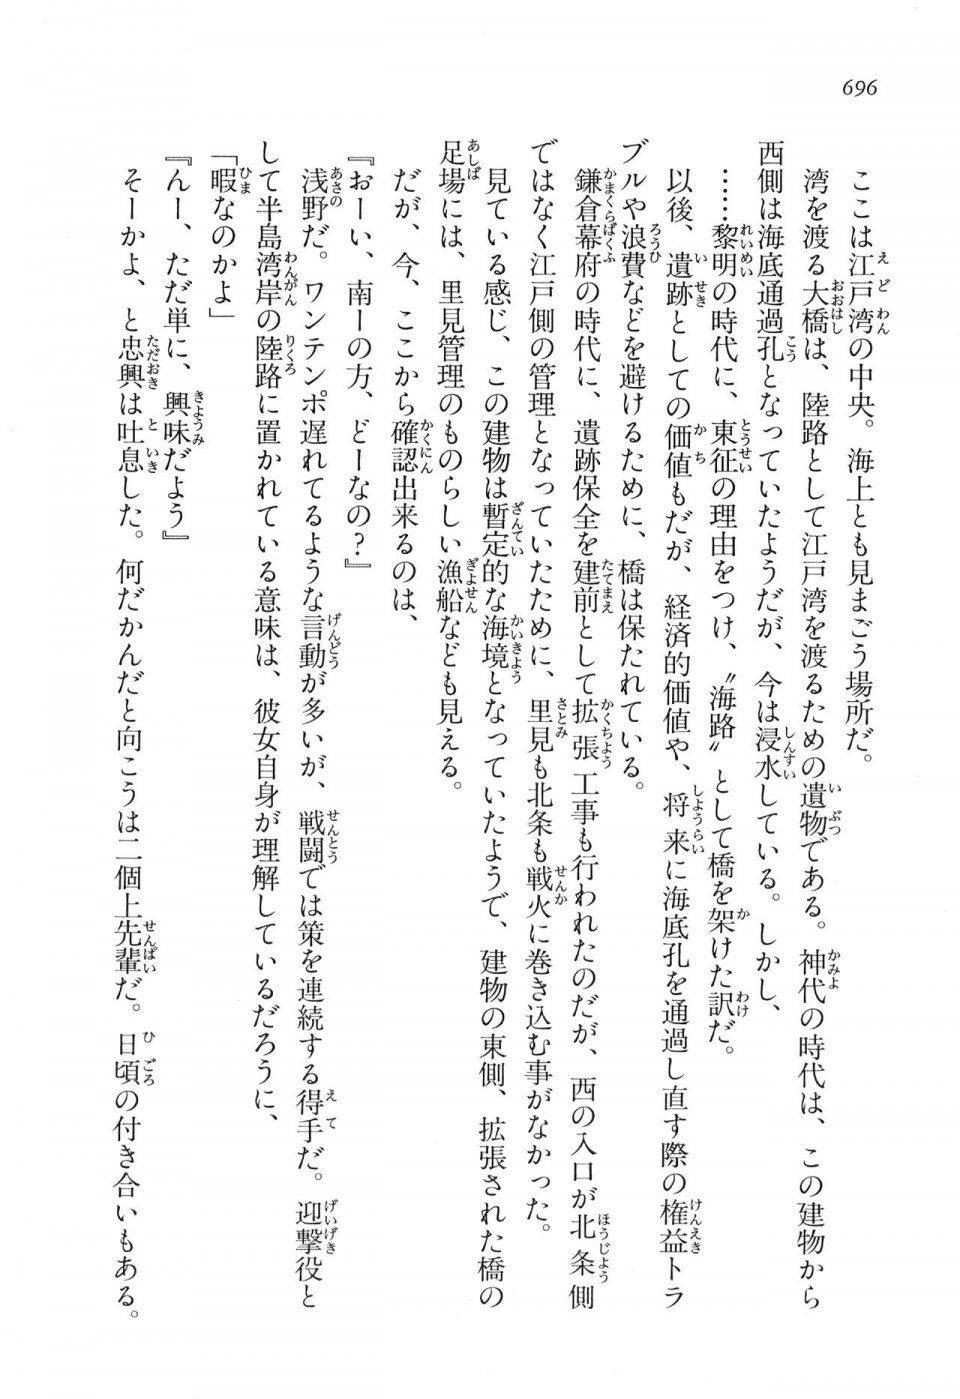 Kyoukai Senjou no Horizon LN Vol 16(7A) - Photo #696